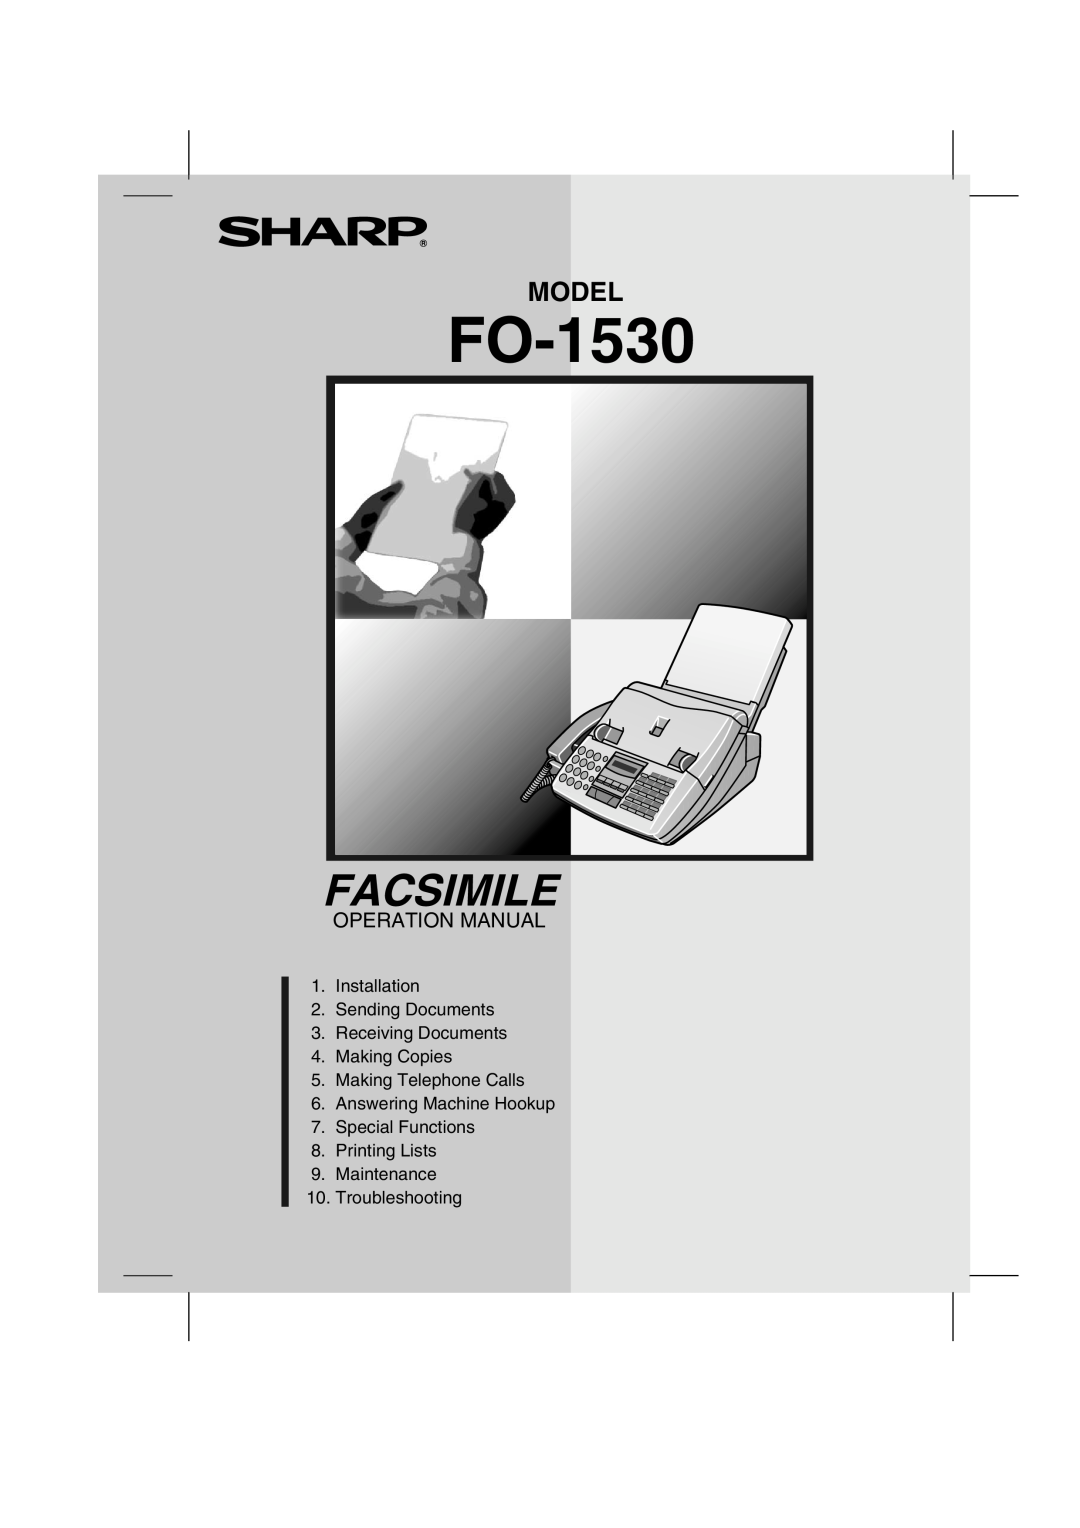 Sharp FO-1530 operation manual Facsimile, Model, Operation Manual 